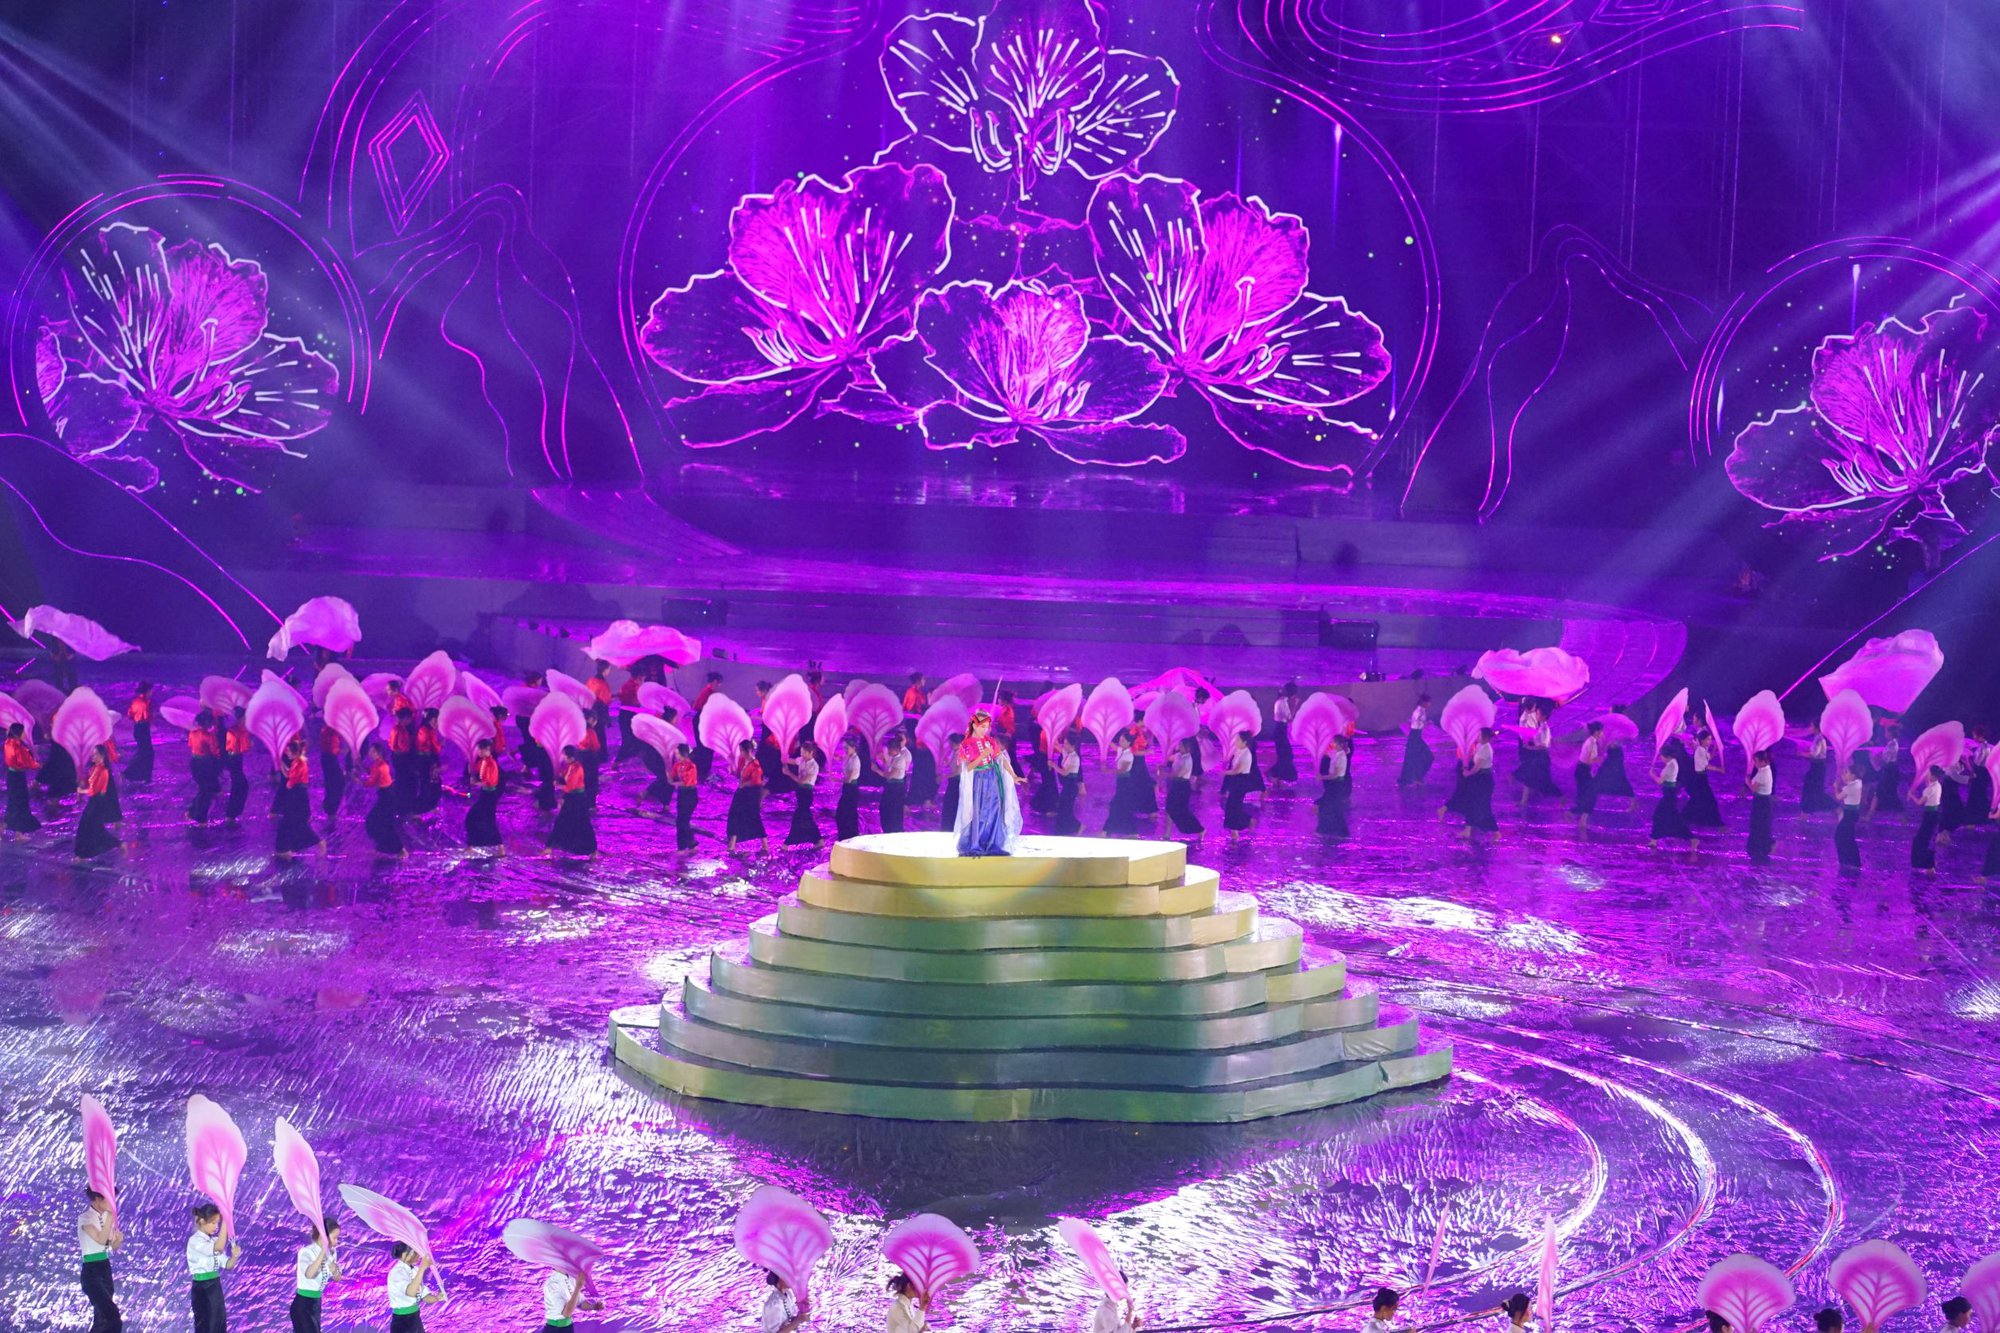 Tùng Dương, Sèn Hoàng Mỹ Lam cùng 3000 nghệ nhân, đồng bào dầm mưa diễn màn Xòe Thái lớn chưa từng có - Ảnh 8.